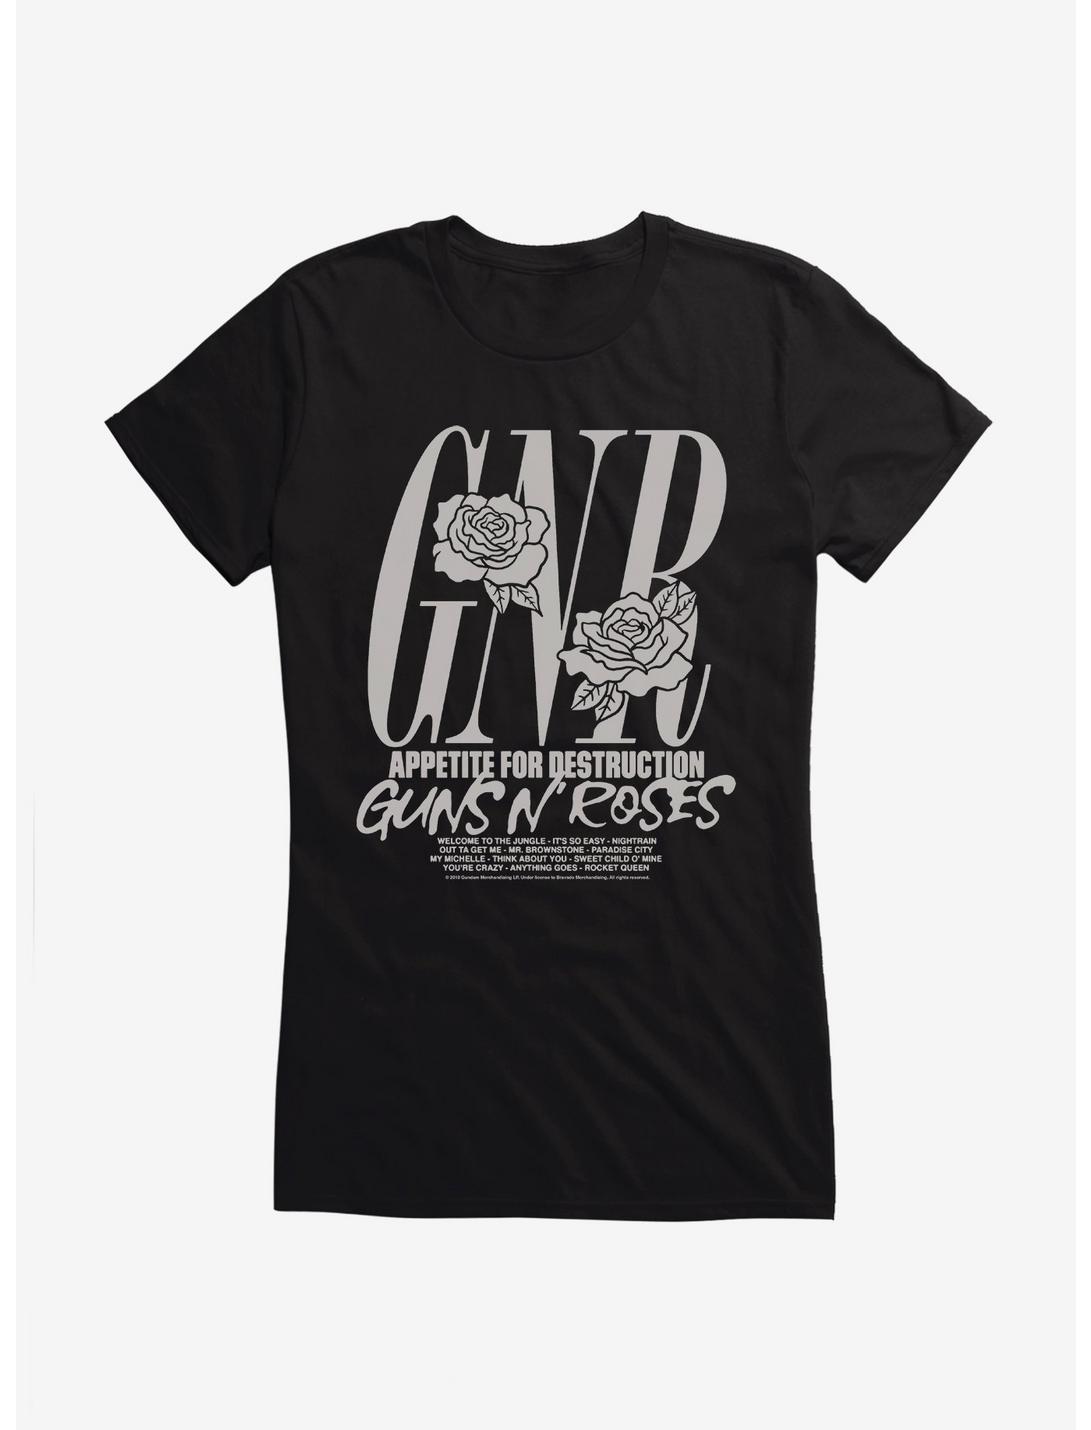 Guns N' Roses Appetite For Destruction Tracklist Girls T-Shirt, BLACK, hi-res